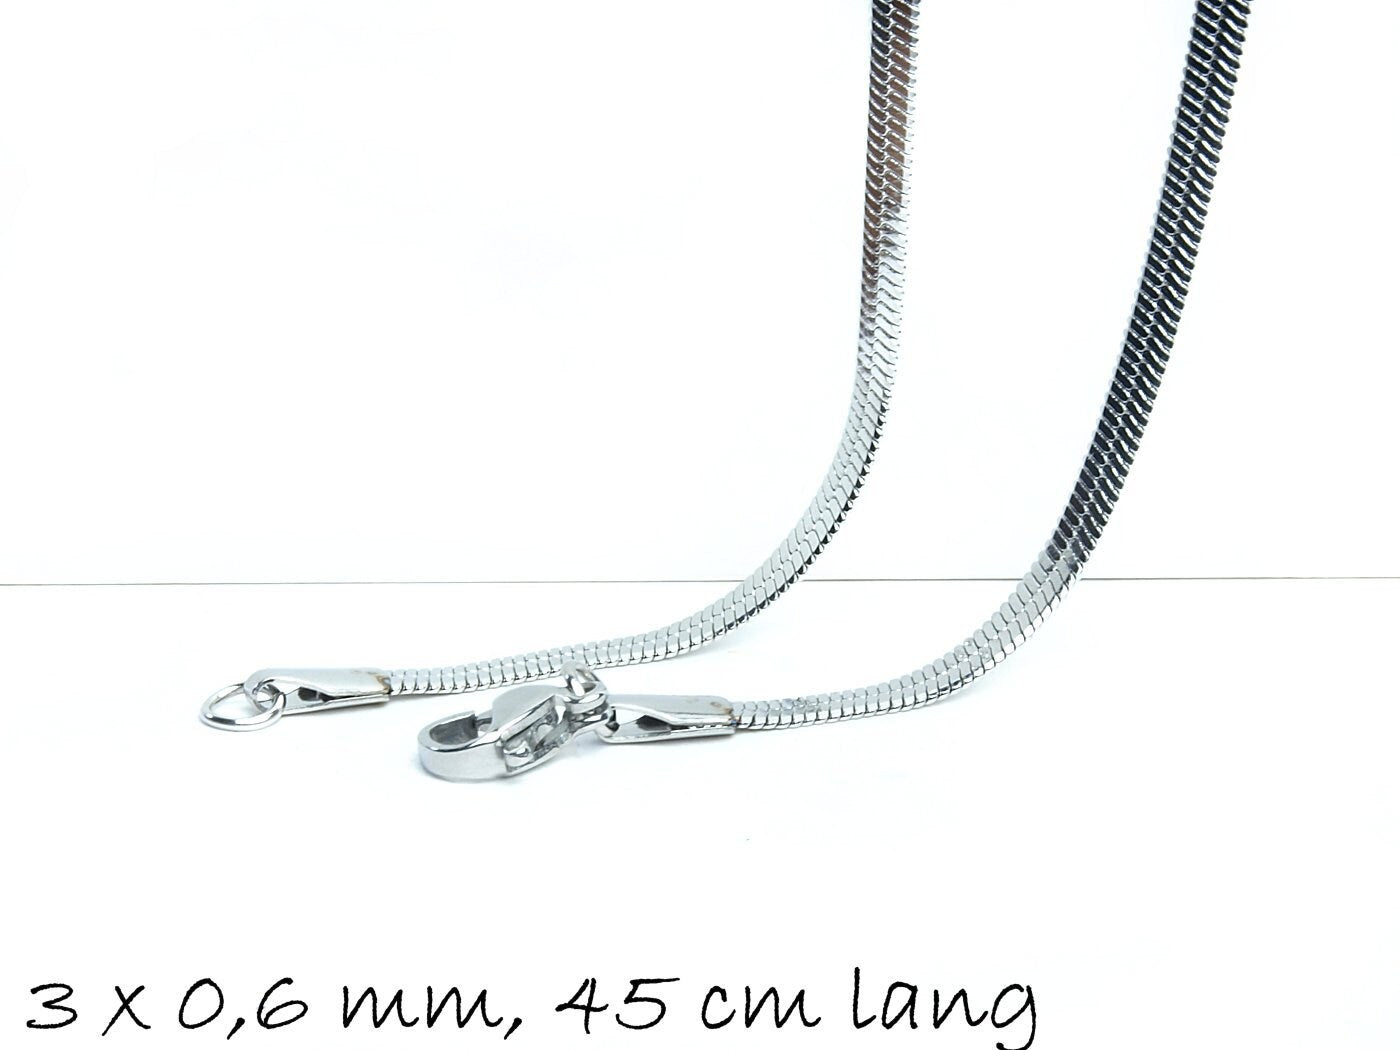 Fertige Schlangenkette Edelstahl, 45 cm lang, 3 x 0,6 mm